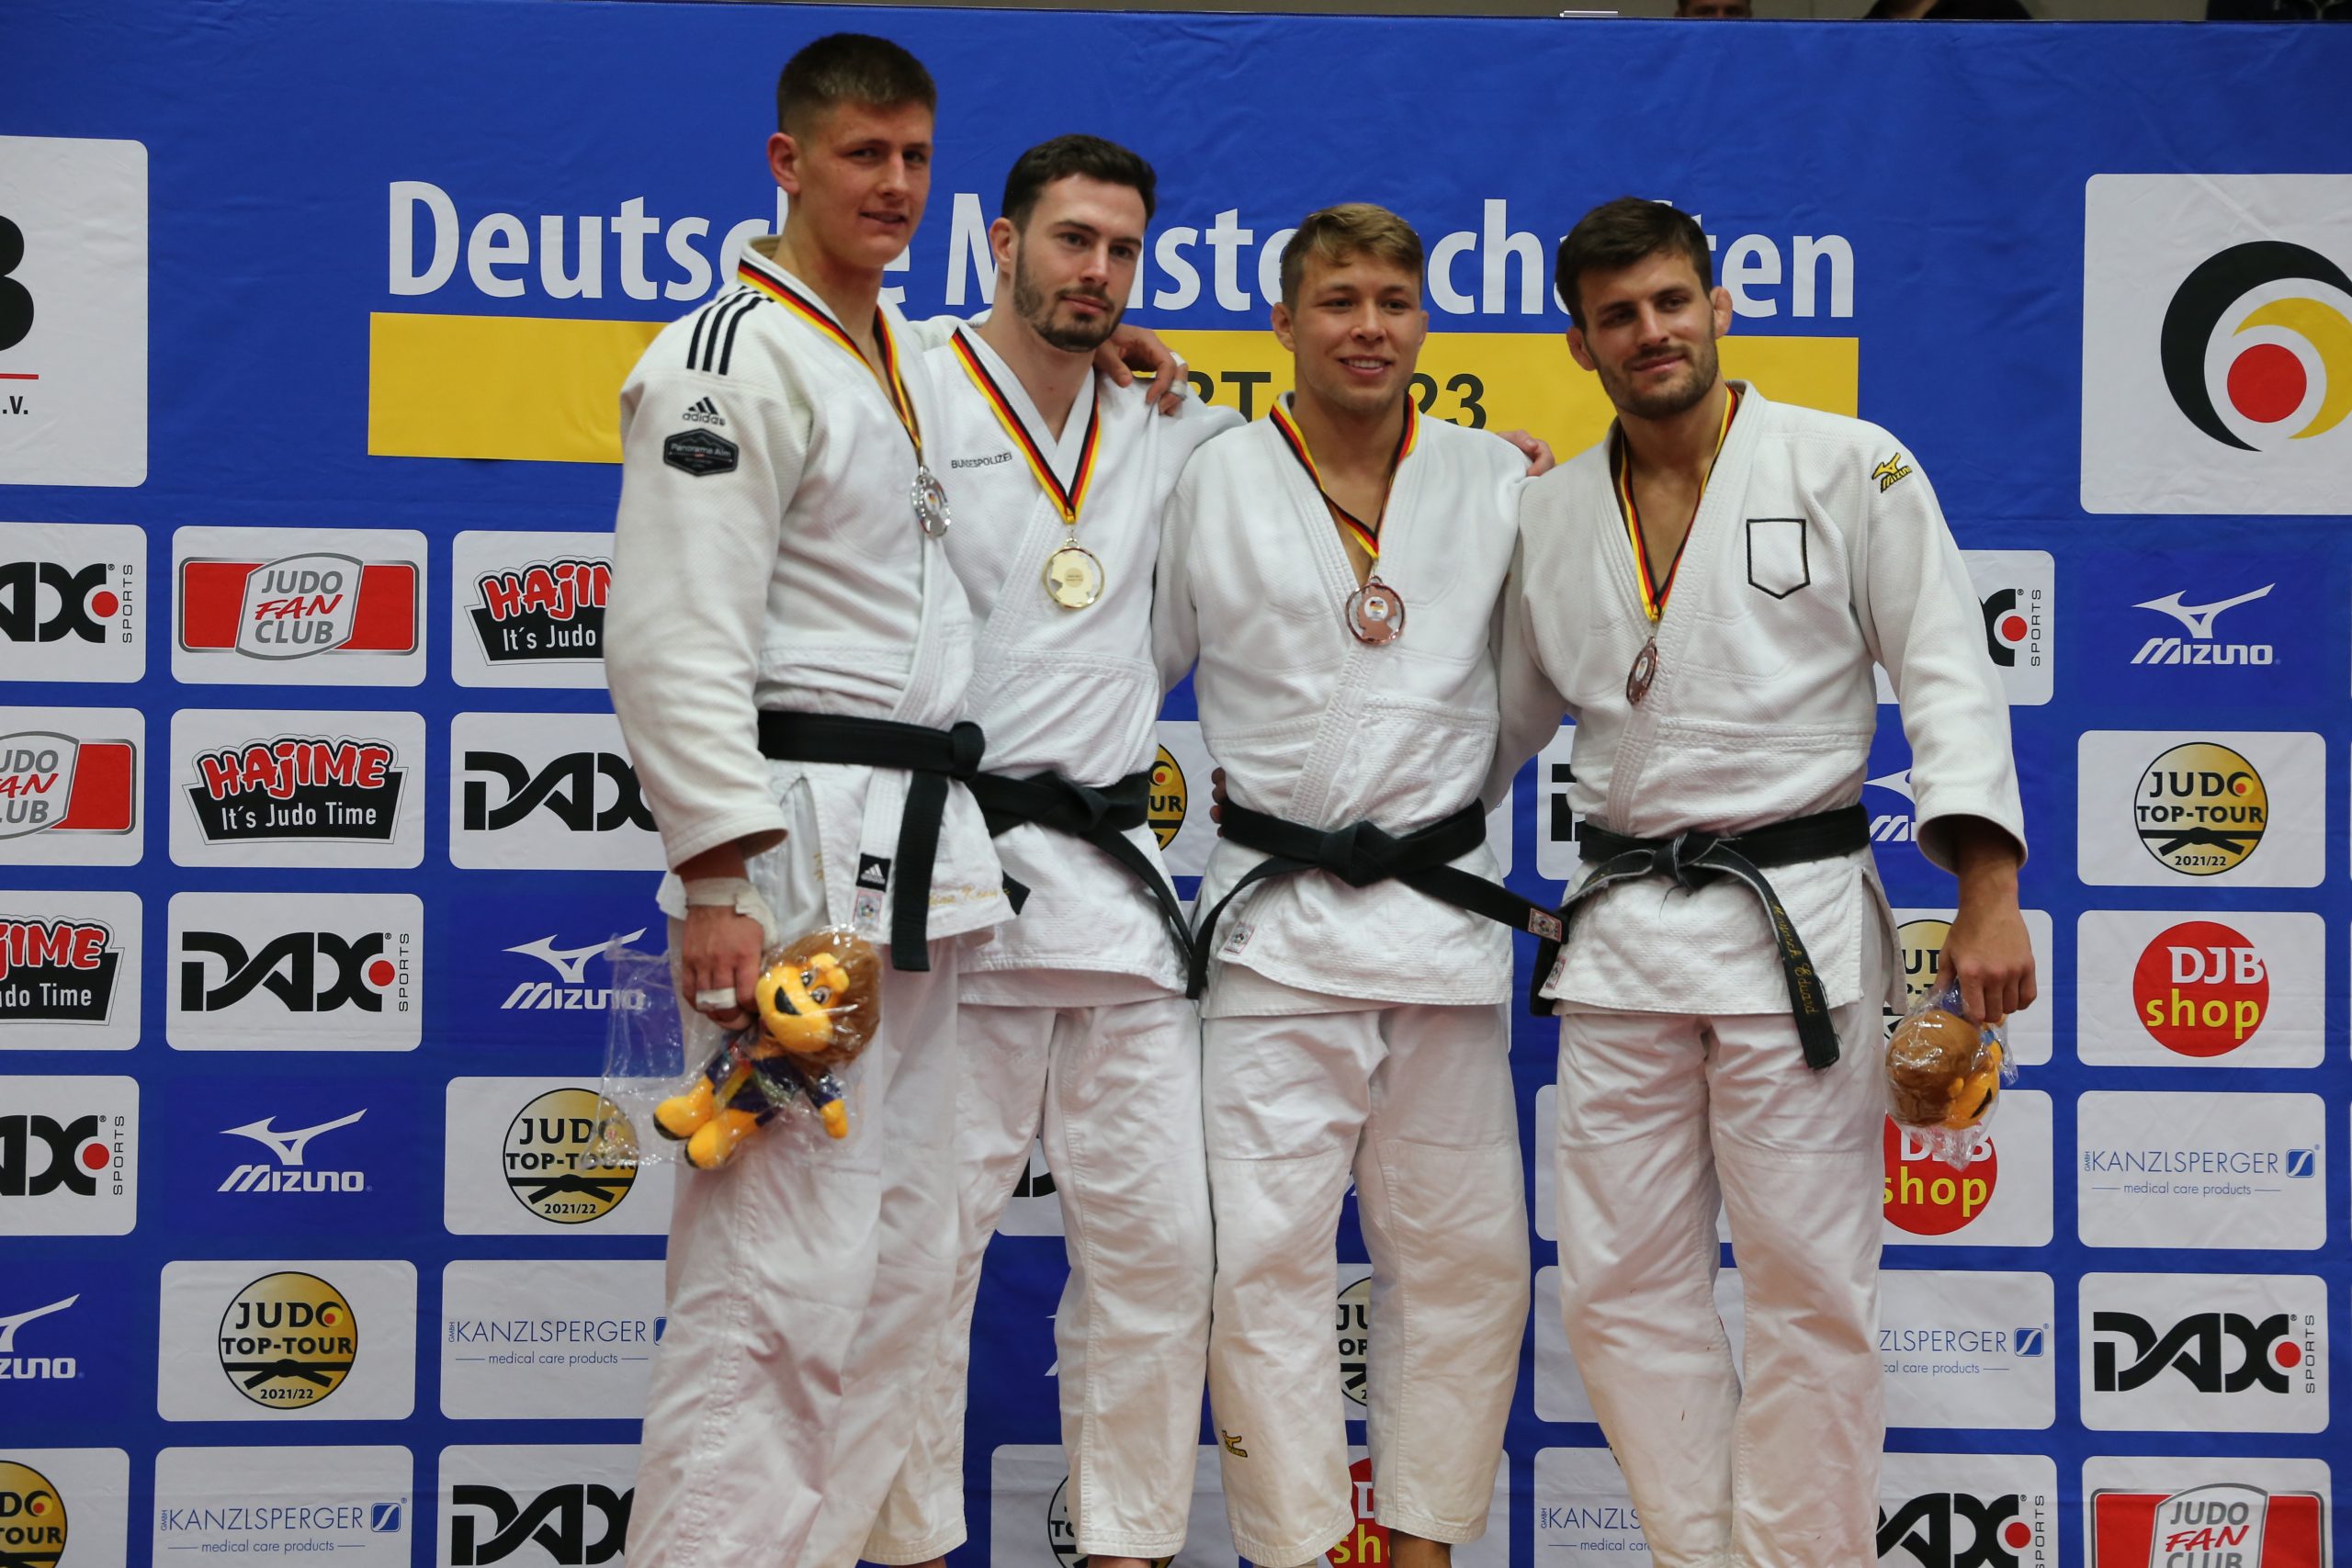 Tim Schmidt wird Deutscher Meister Brandenburgischer Judo-Verband e.V.